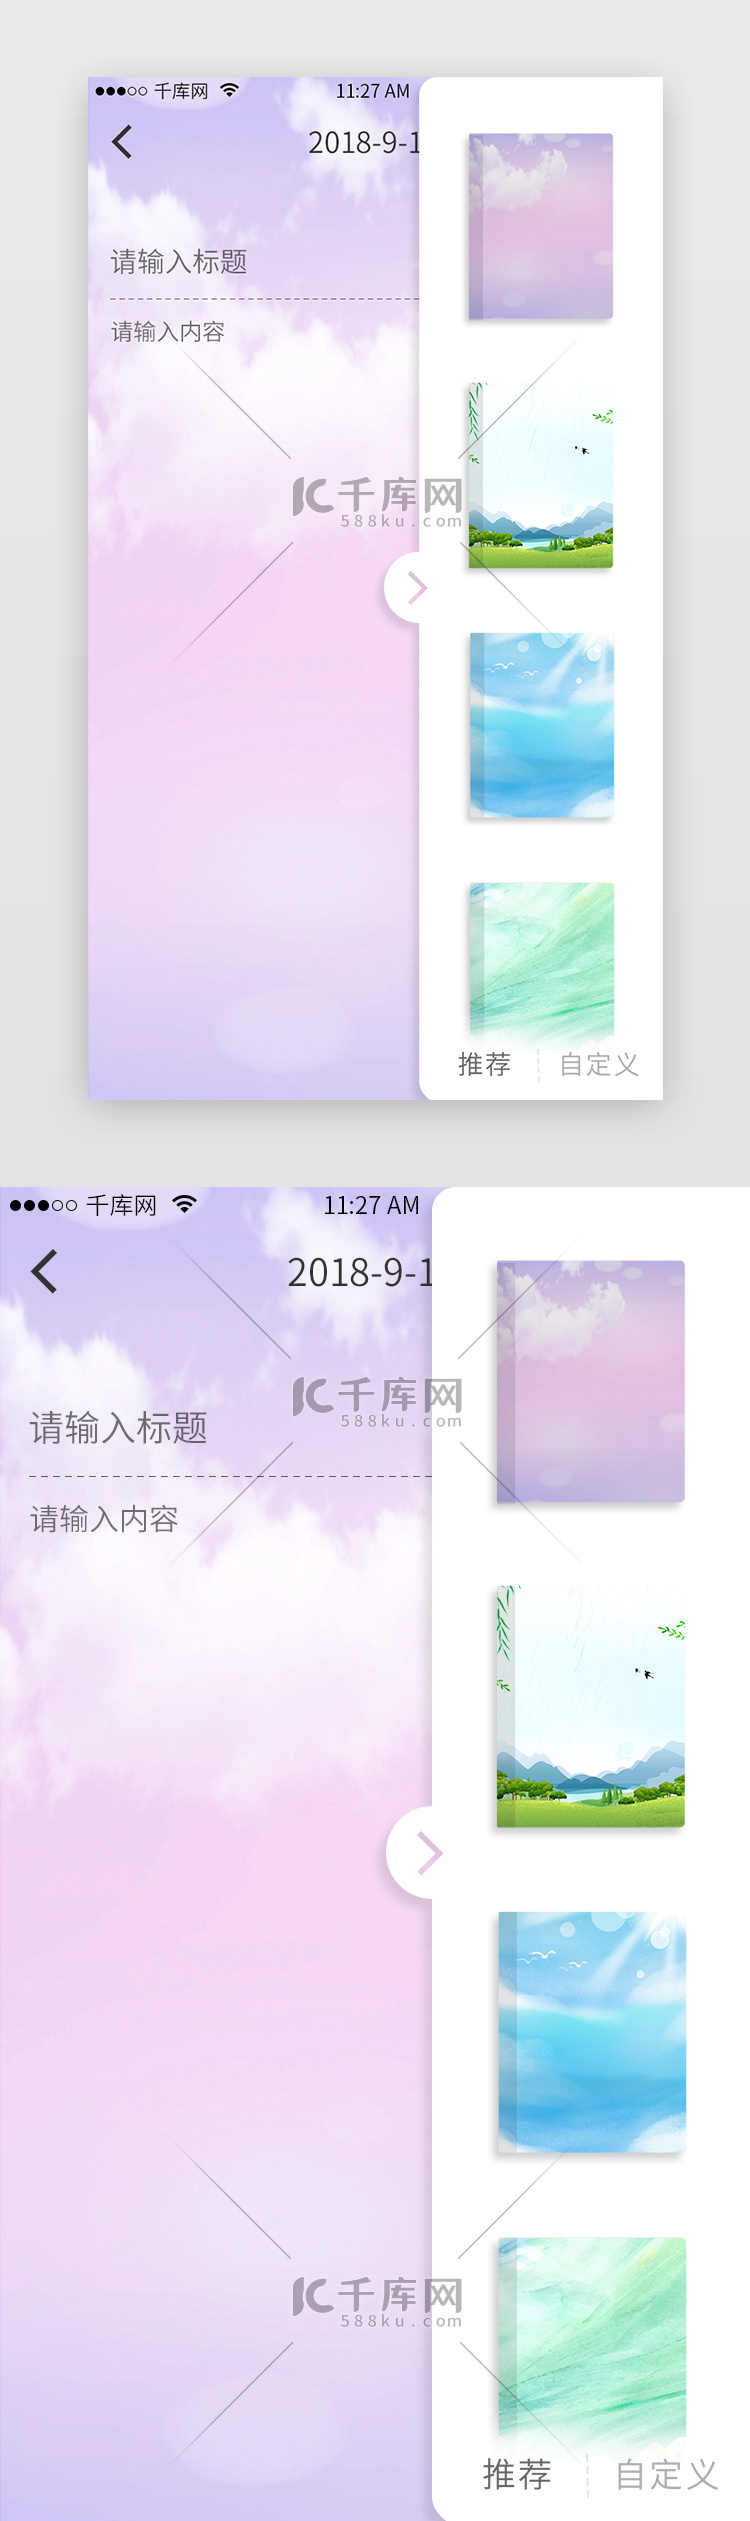 紫色简洁笔记电商app主界面